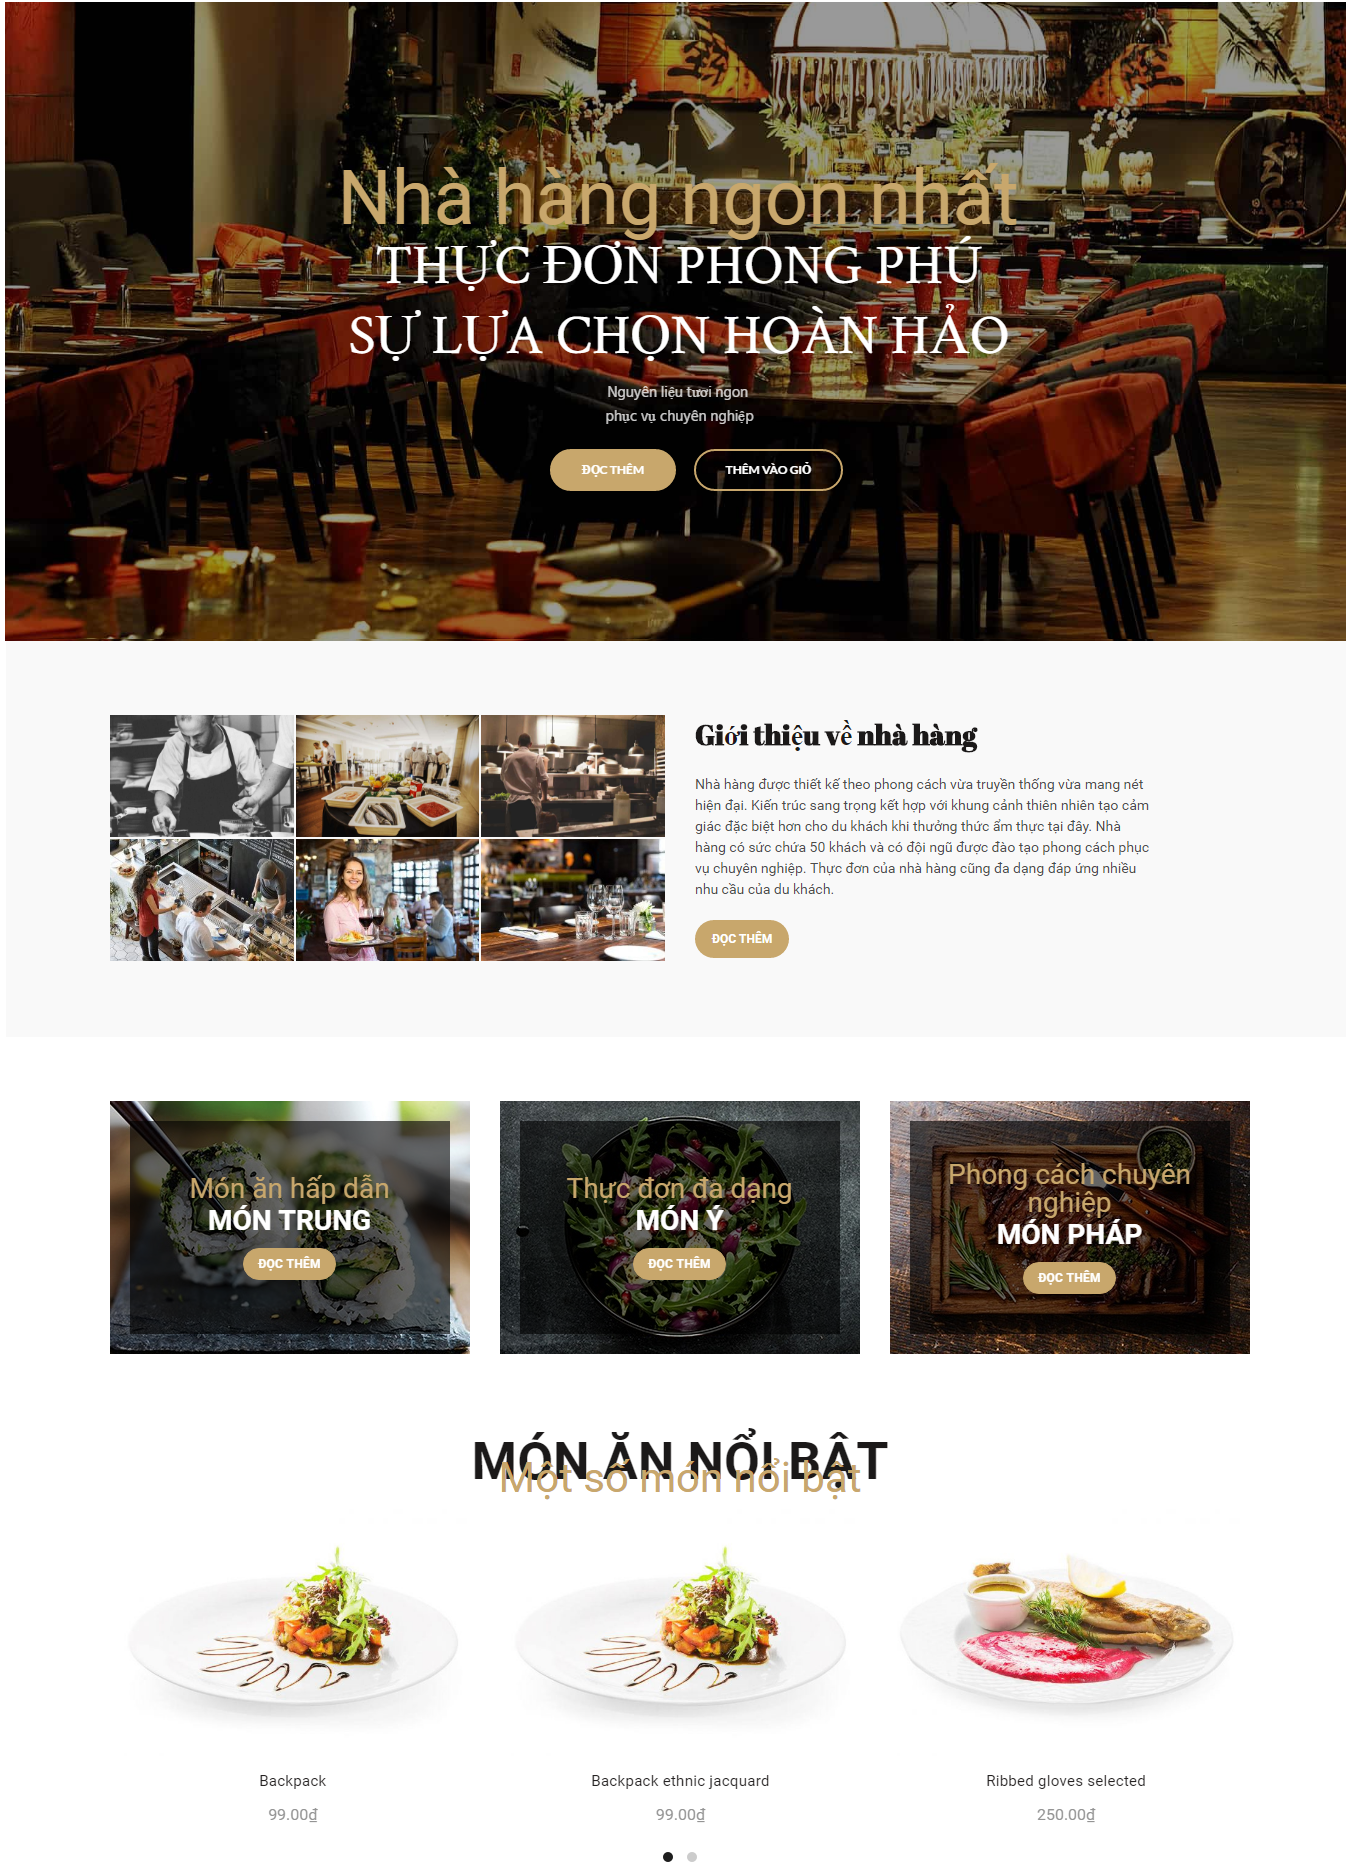 Mẫu giao diện website doanh nghiệp- nhà hàng